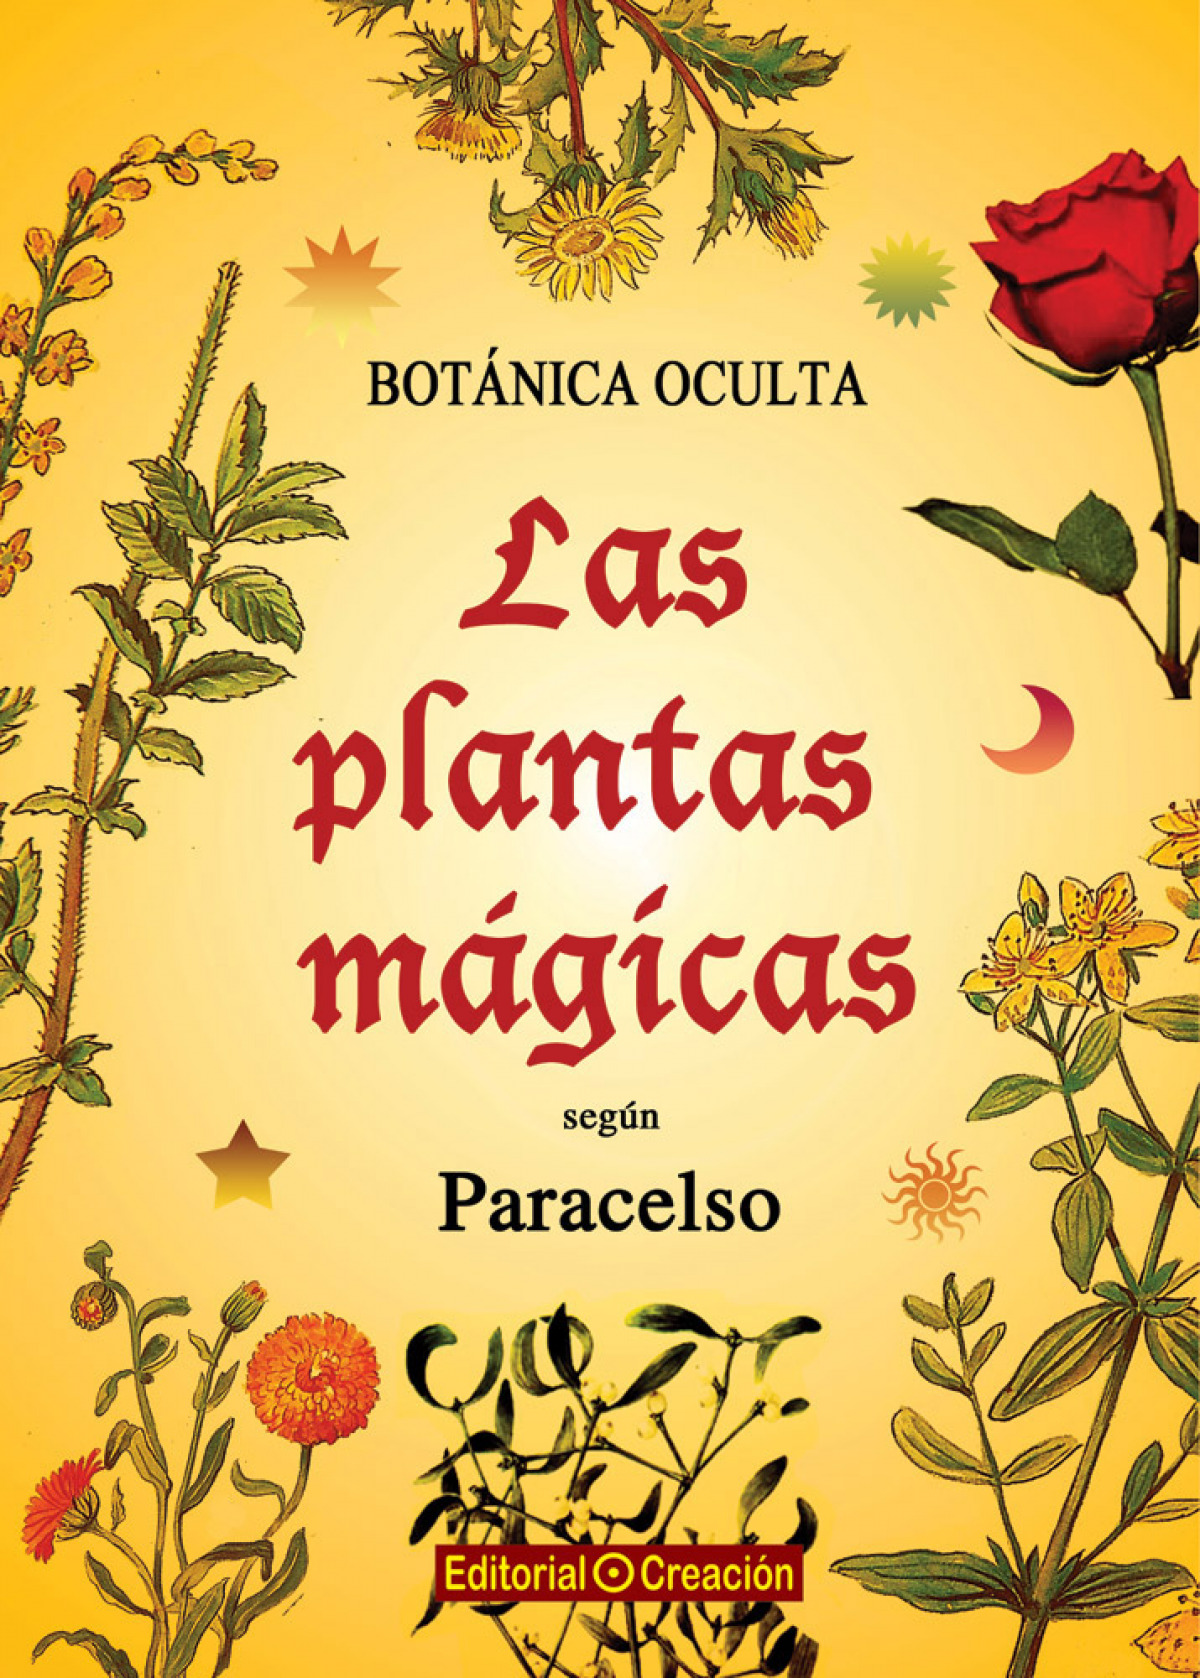 Botánica oculta: Las plantas mágicas según Paracelo Las plantas mágica - Putz, Rodolfo